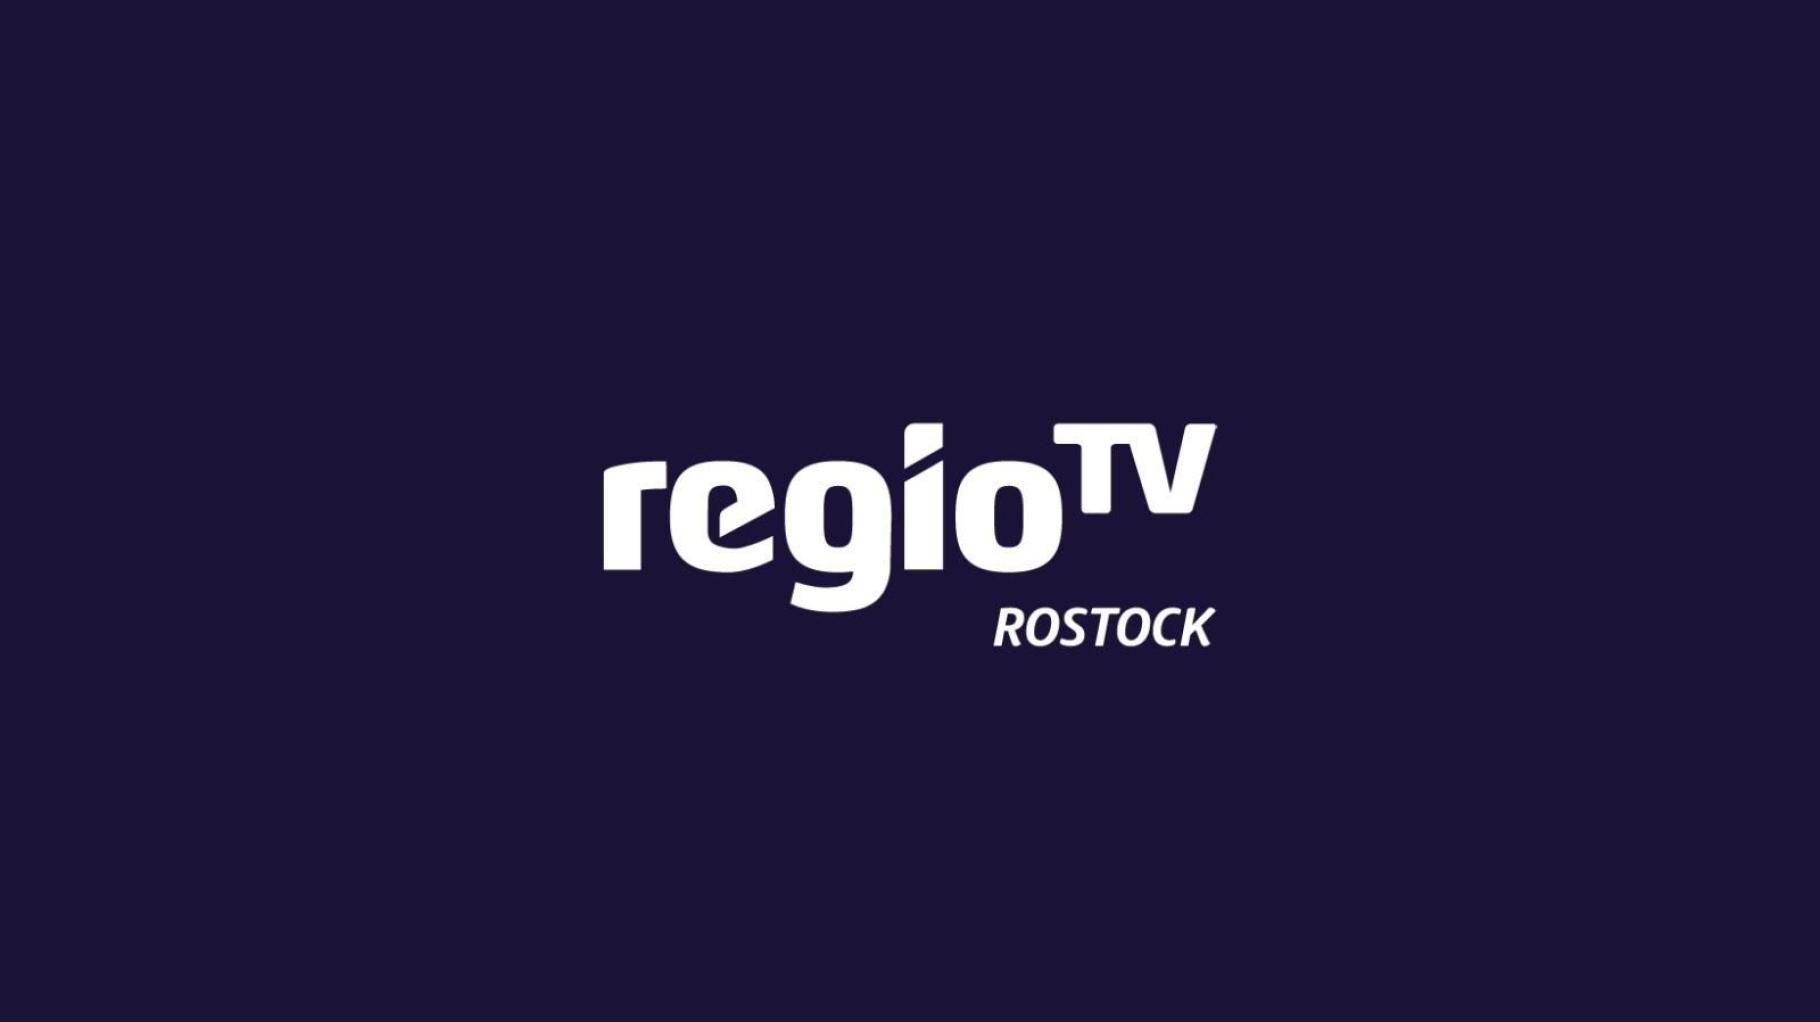 regioTV Rostock: Das läuft beim Wochenrückblick